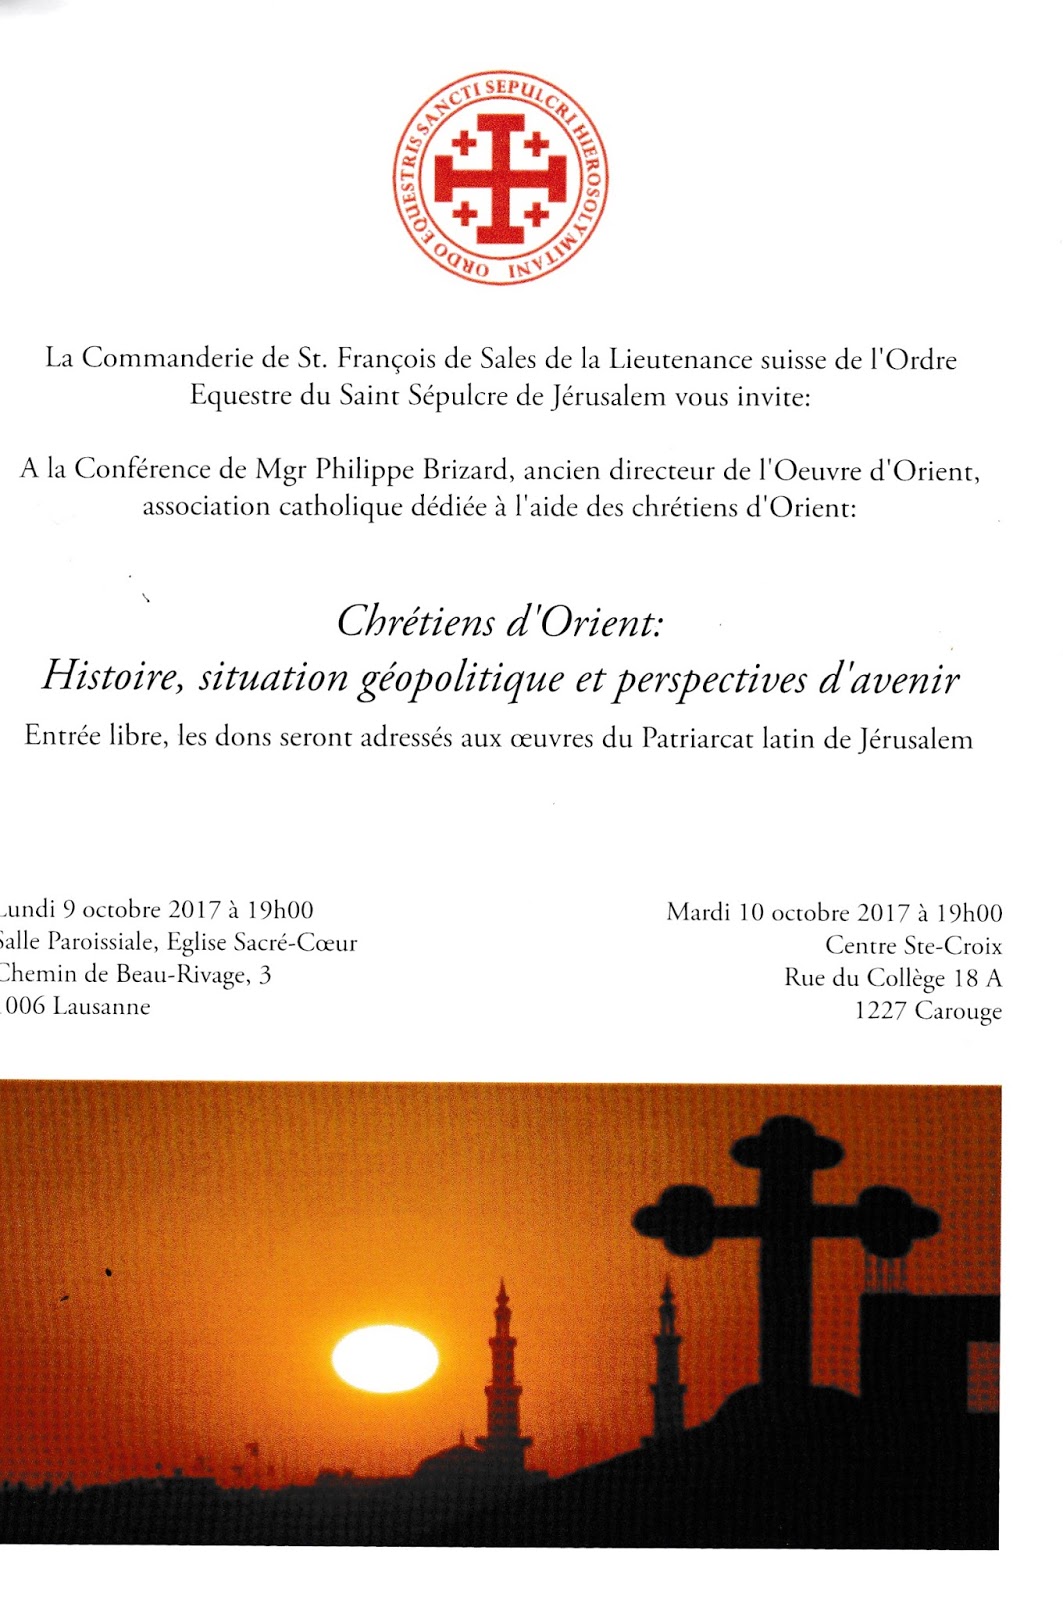 Invitations à soutenir les chrétiens d’orient, Lausanne et Carouge les 9 et 10.10 2017